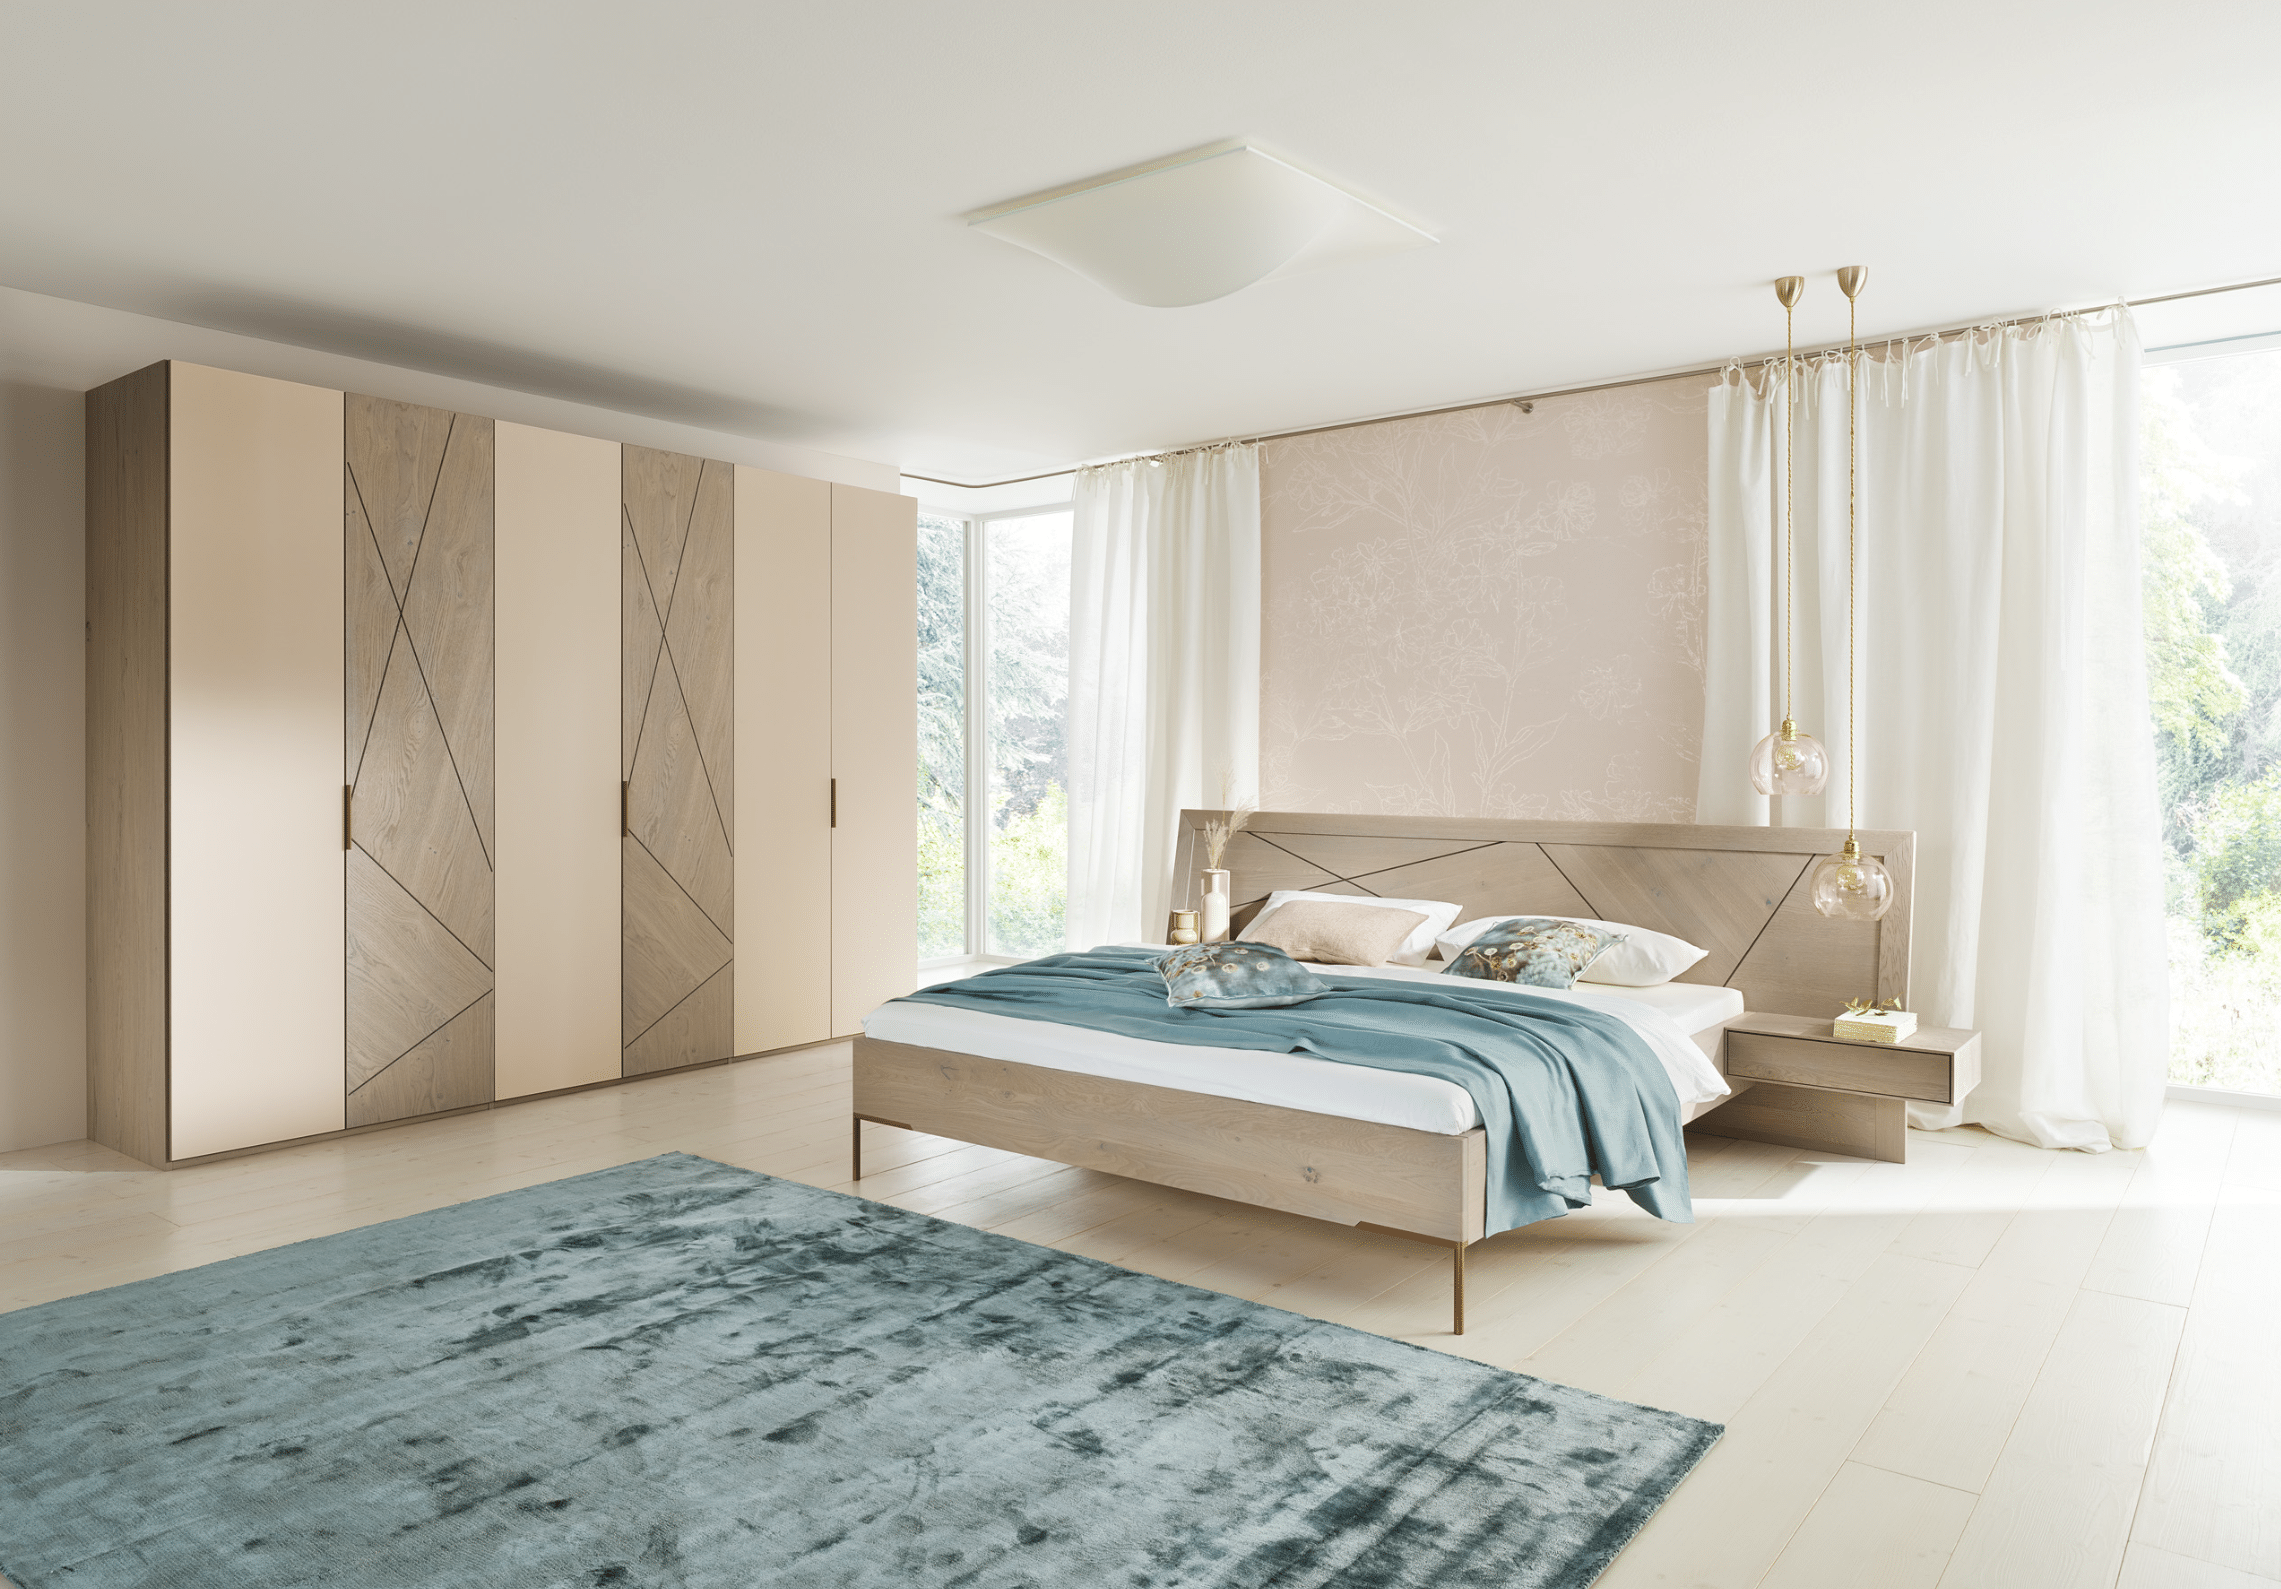 WOHNHAUS Grill & Ronacher zeigt ein modernes Schlafzimmer mit einem Doppelbett aus dem Holz der Asteiche mit grauen Einlegearbeiten und dazupassendem Kleiderschrank.